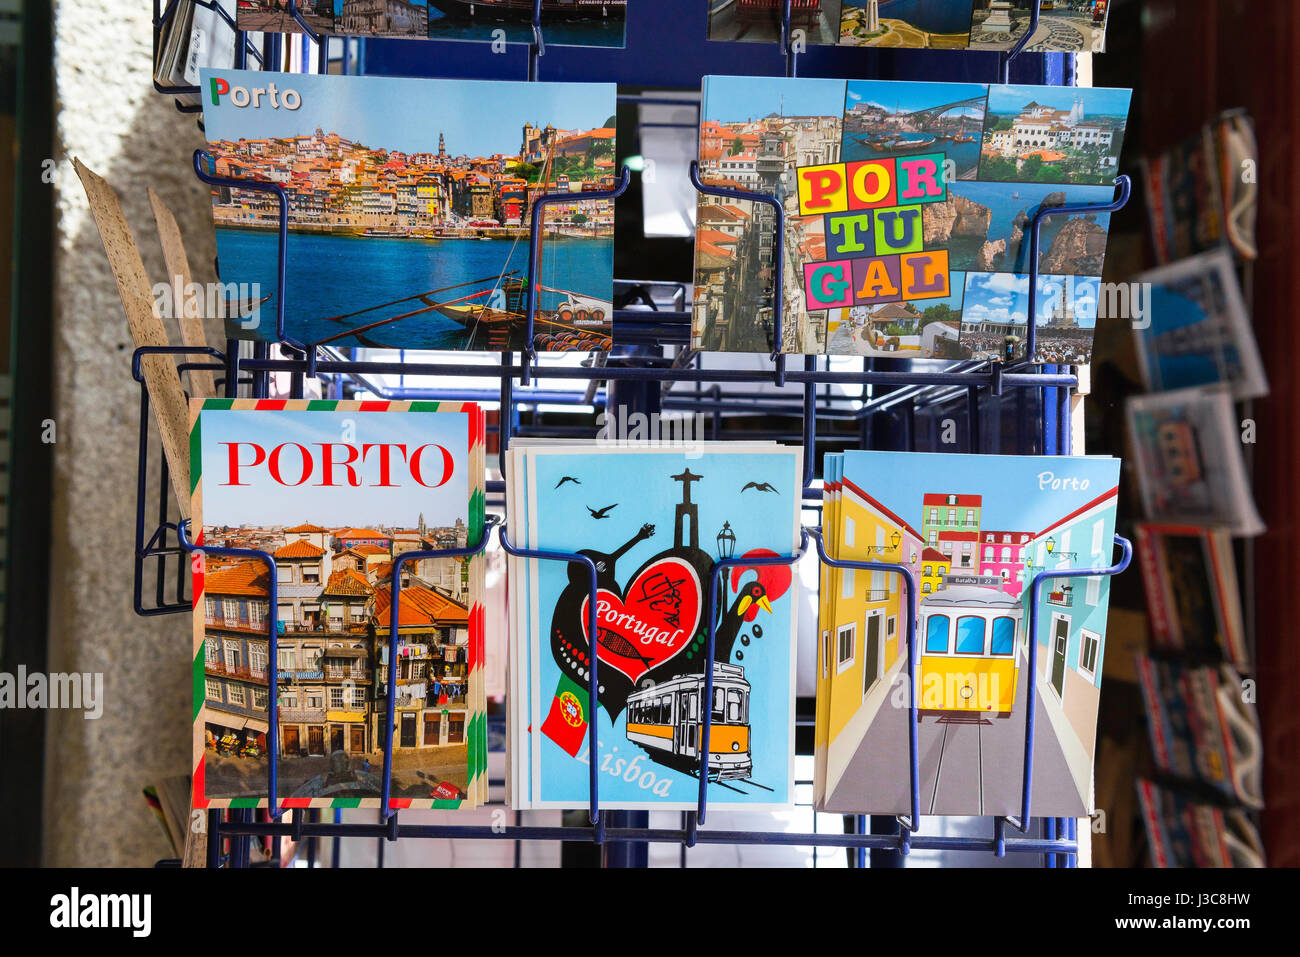 Cartolina portoghese, vista di una mostra di cartoline fuori di un negozio nella zona Ribeira di Porto, Portogallo, Europa Foto Stock